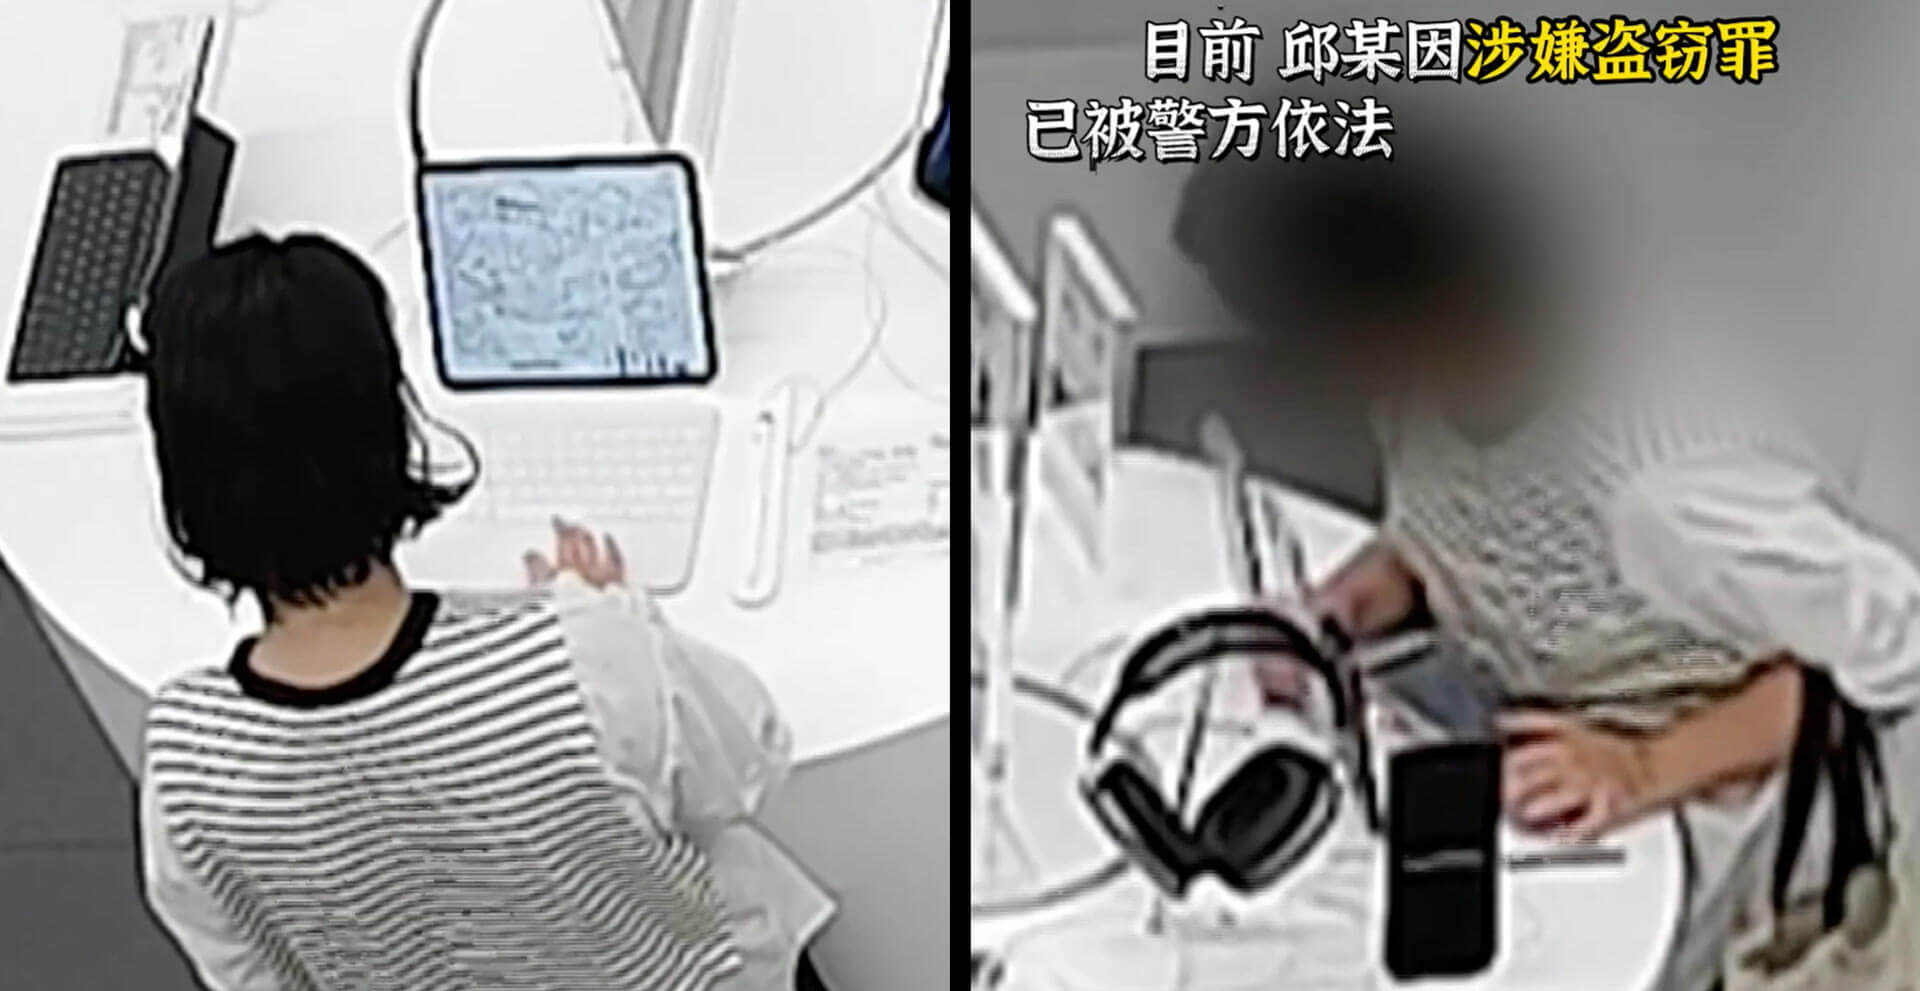 Чтобы украсть Apple iPhone 14 Plus, китаянка перегрызла кабель